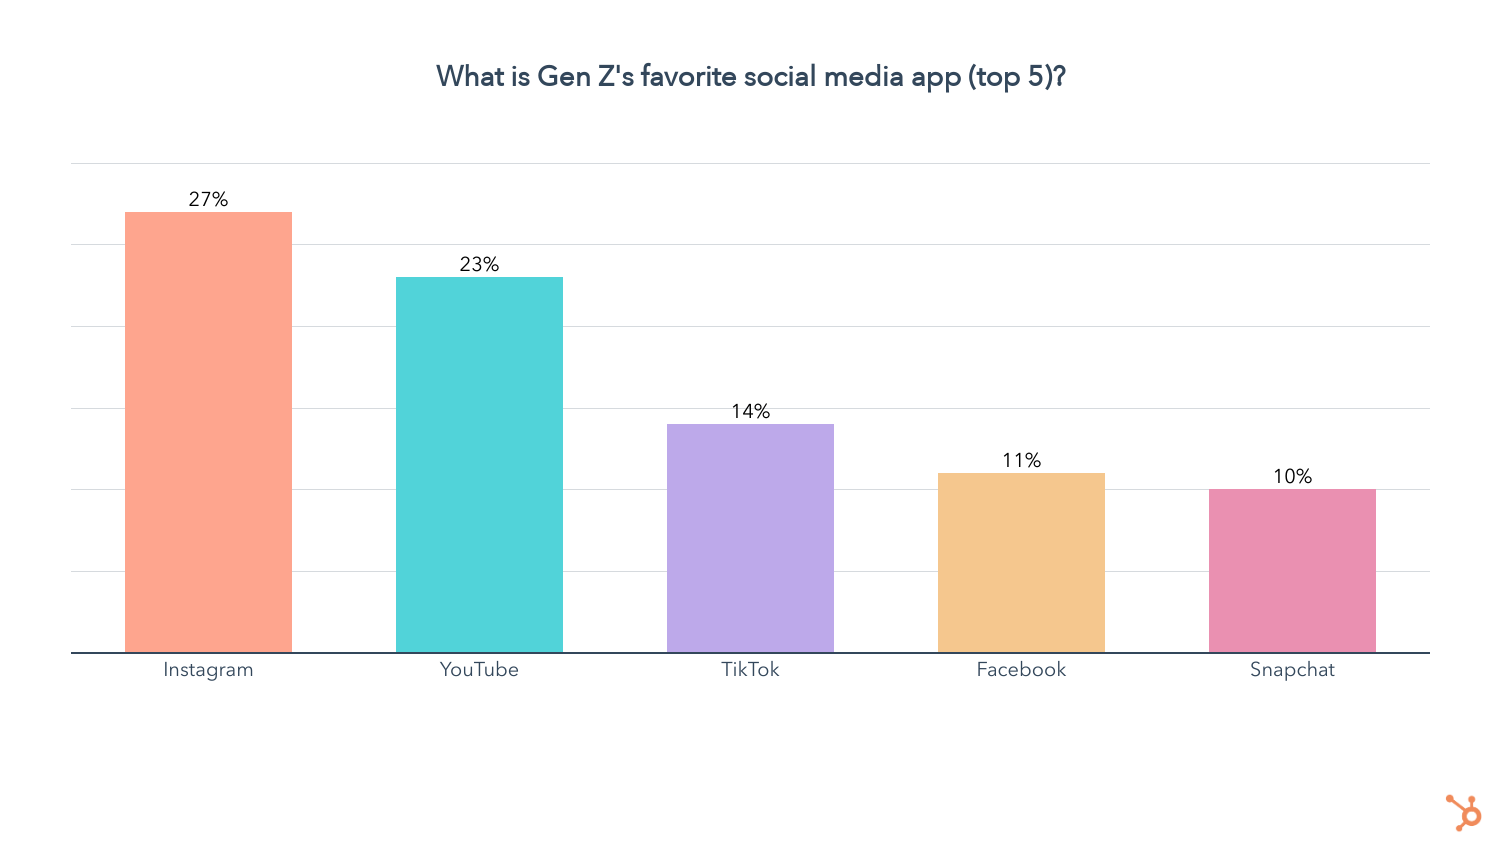 Instagram mới là ứng dụng truyền thông xã hội được yêu thích nhất của Gen Z. 